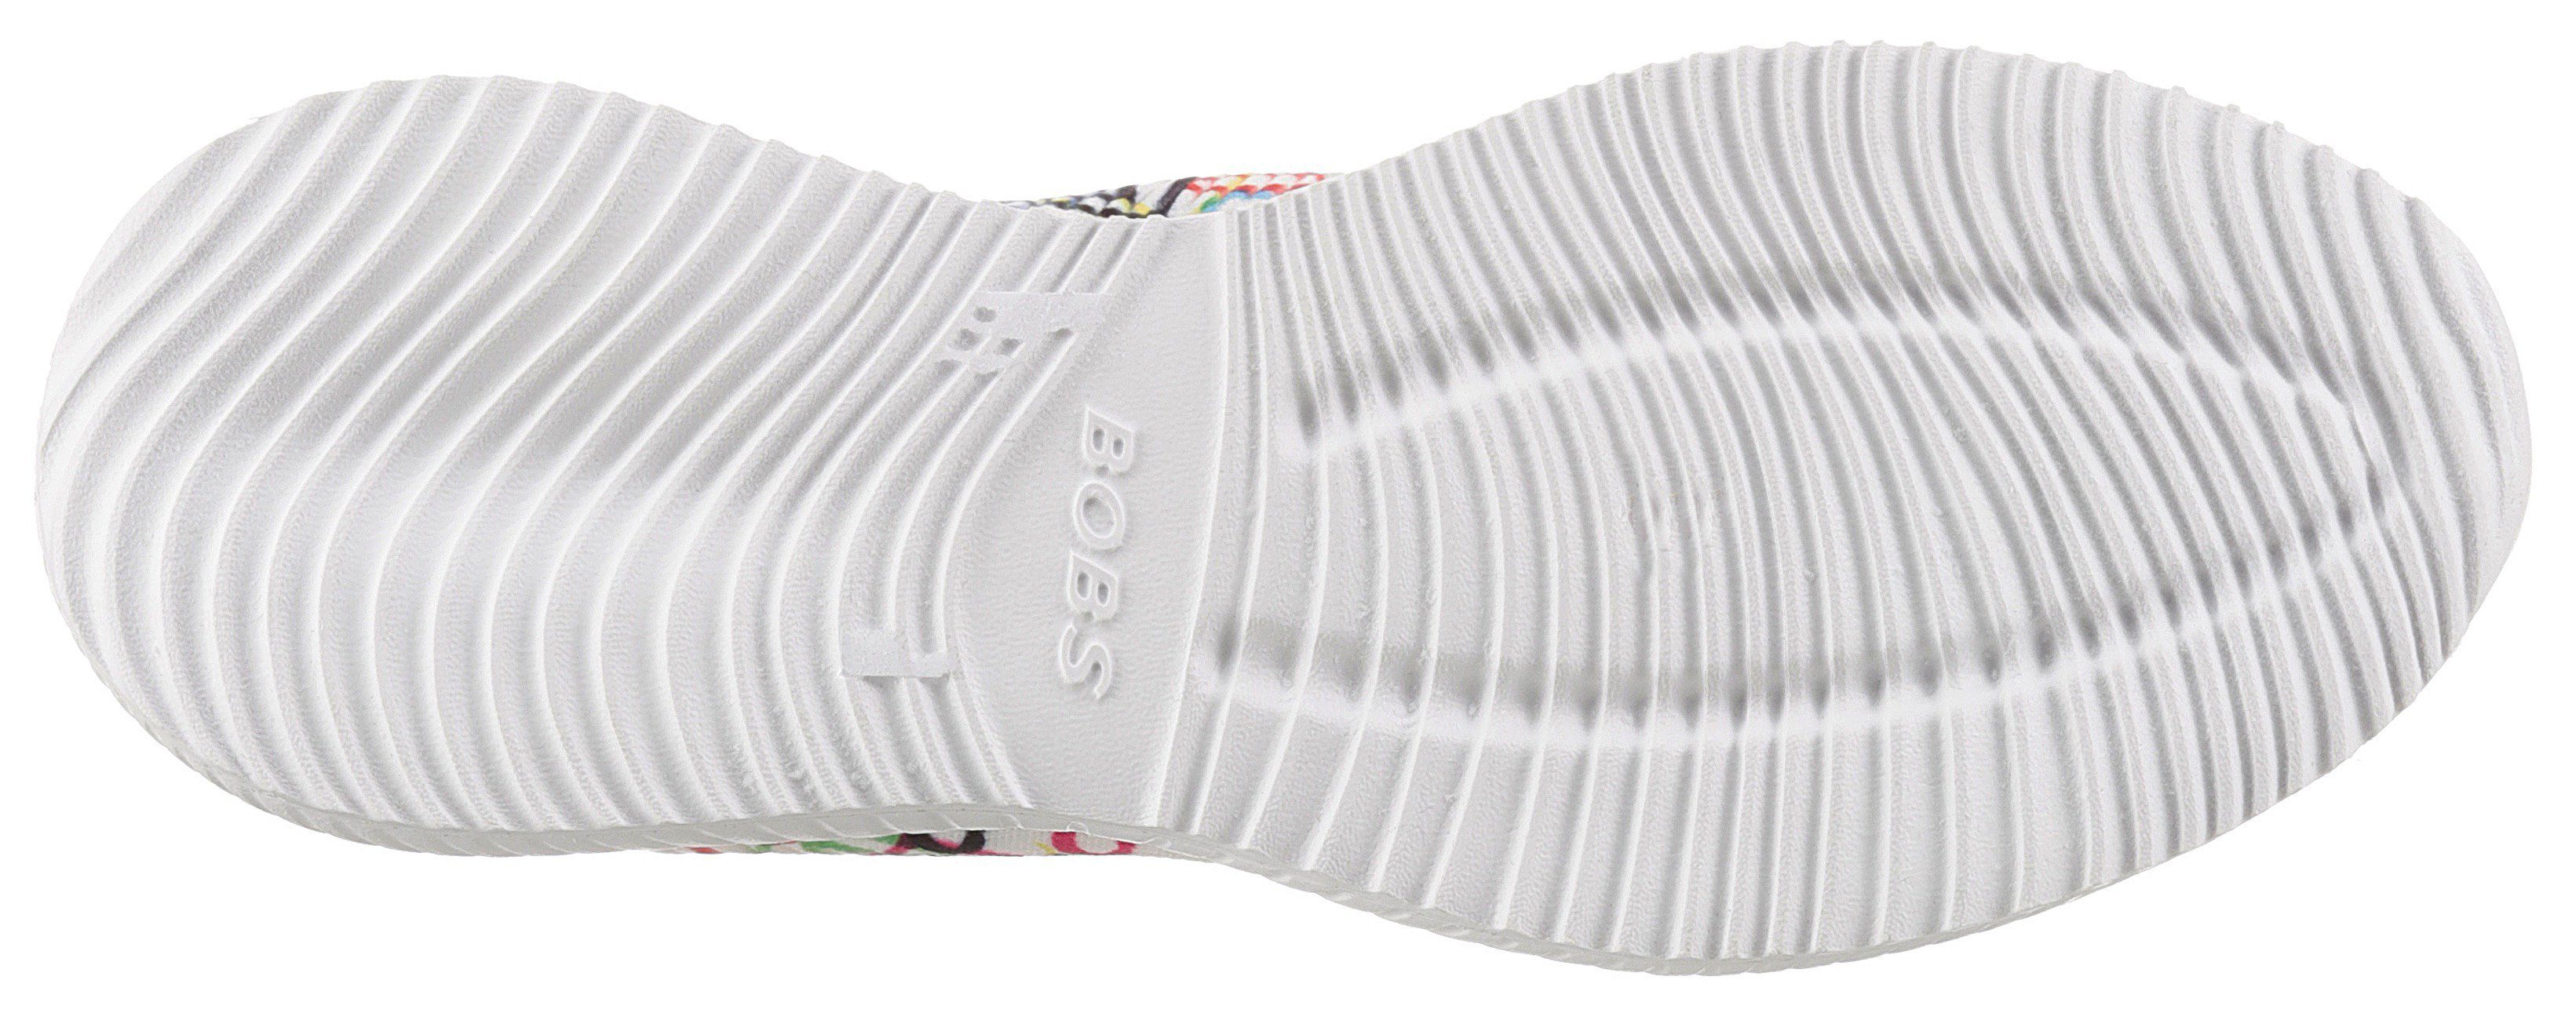 Skechers BOBS Sneaker SQUAD weiß-multi mit Allover-Herzchenprint